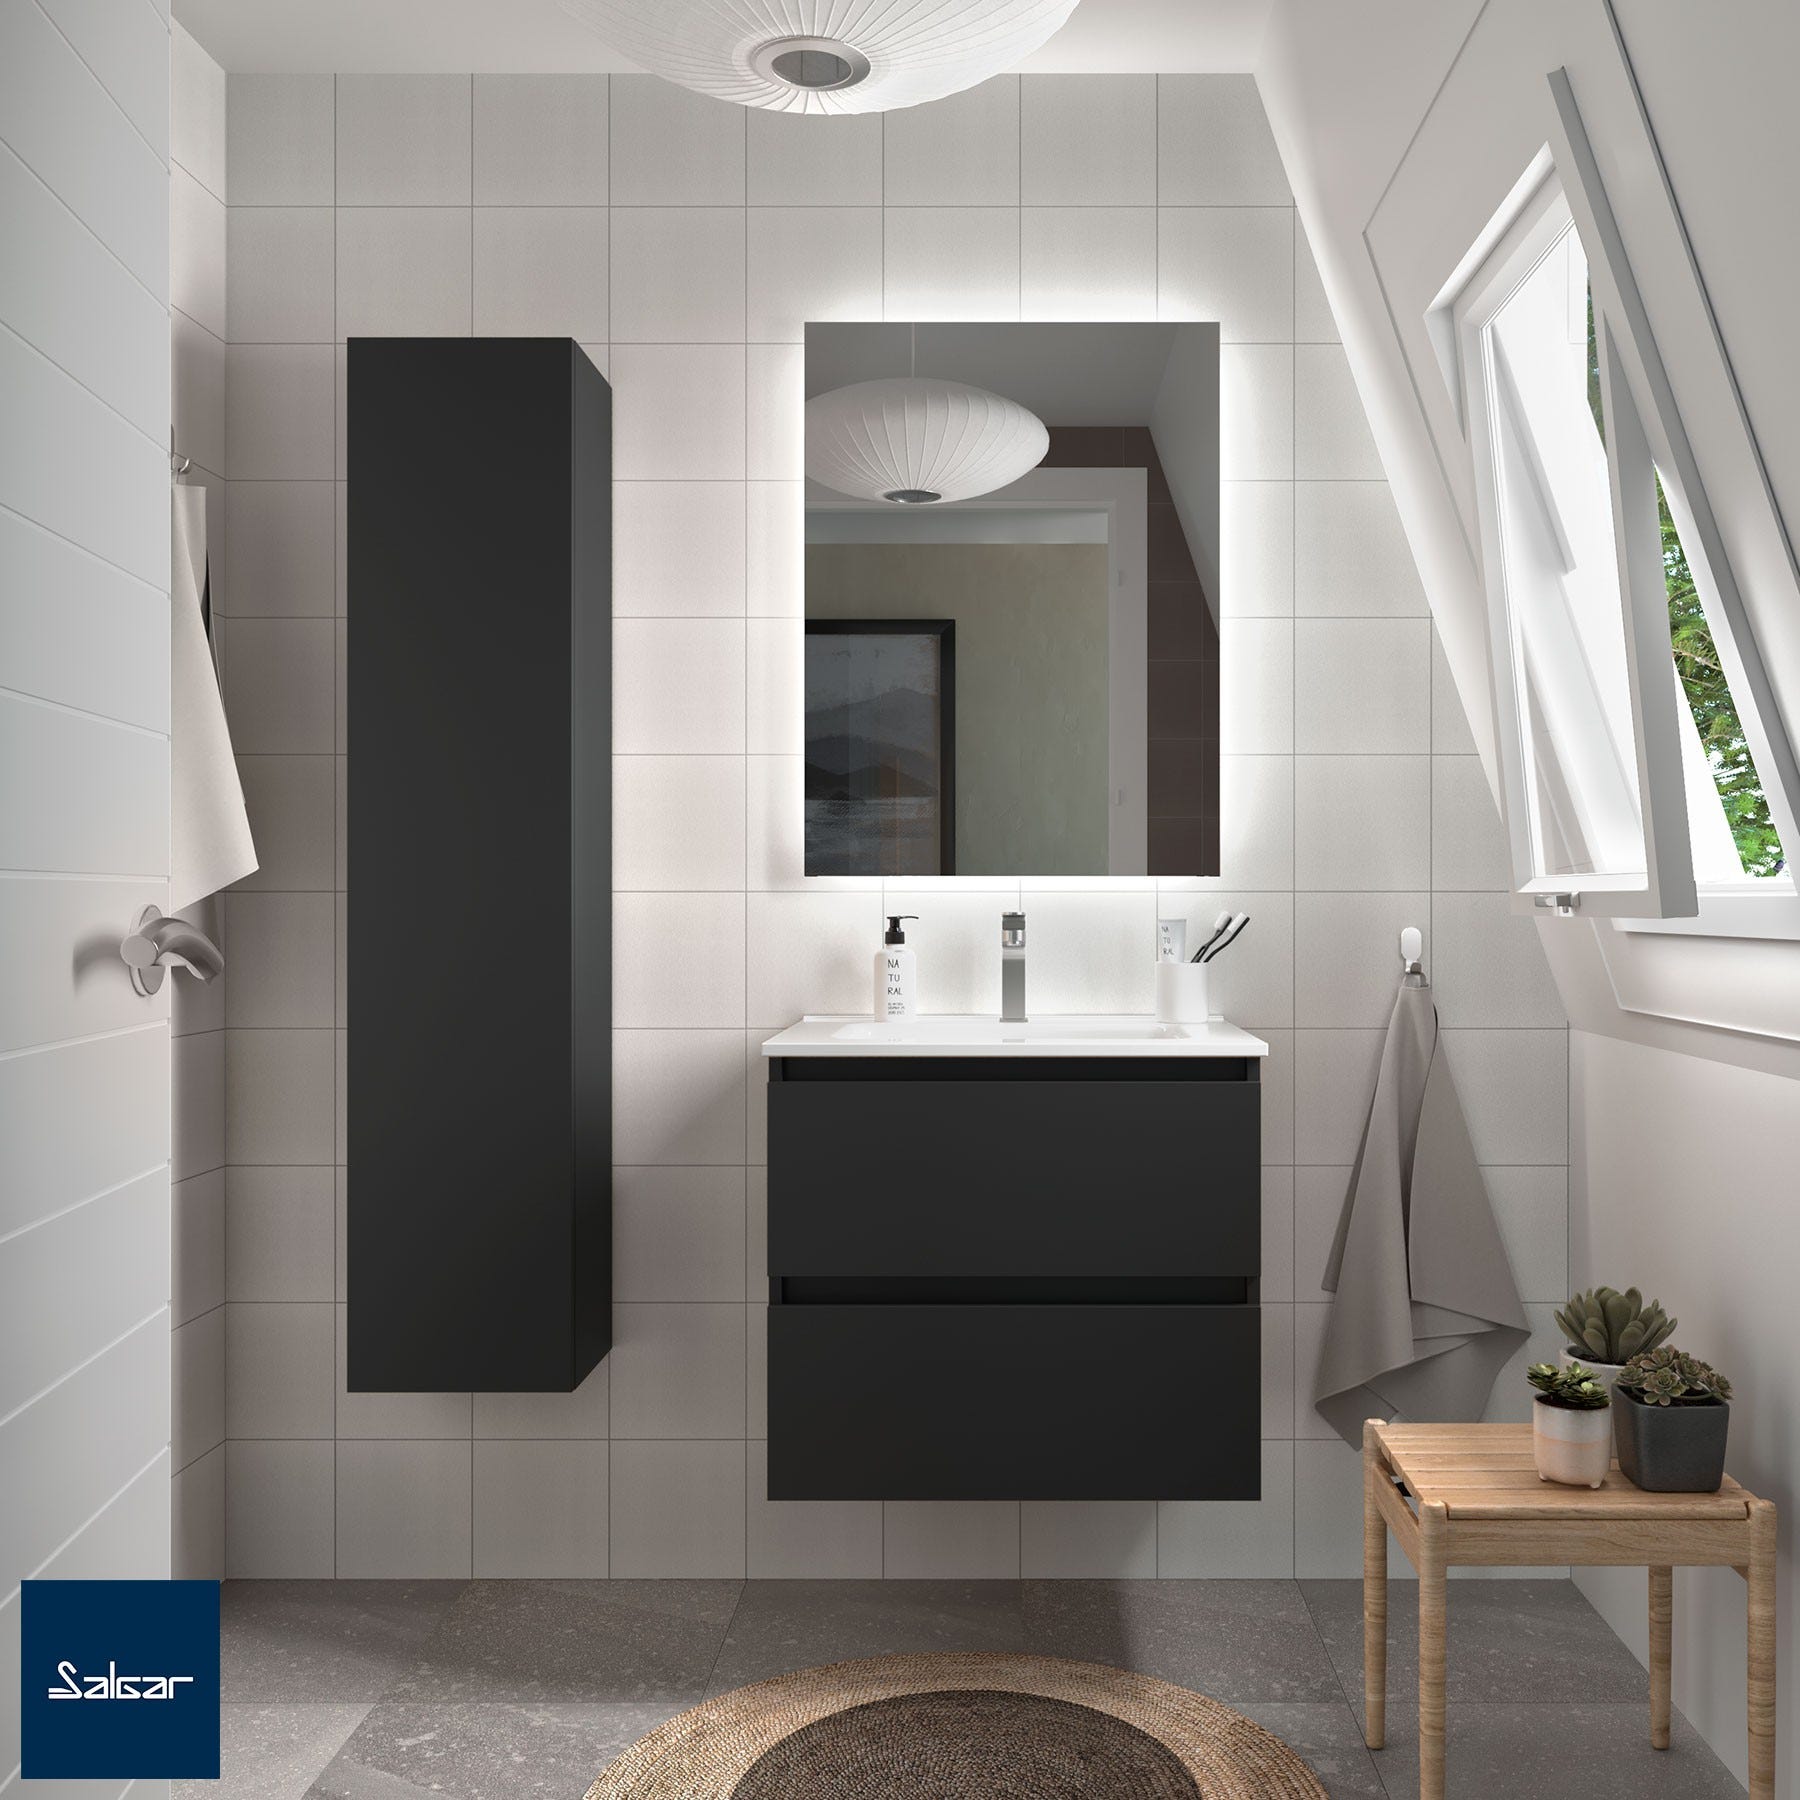 Meuble salle de bain - 70 cm - Avec plan vasque - Noir mat - A suspendre - KARAIB 0